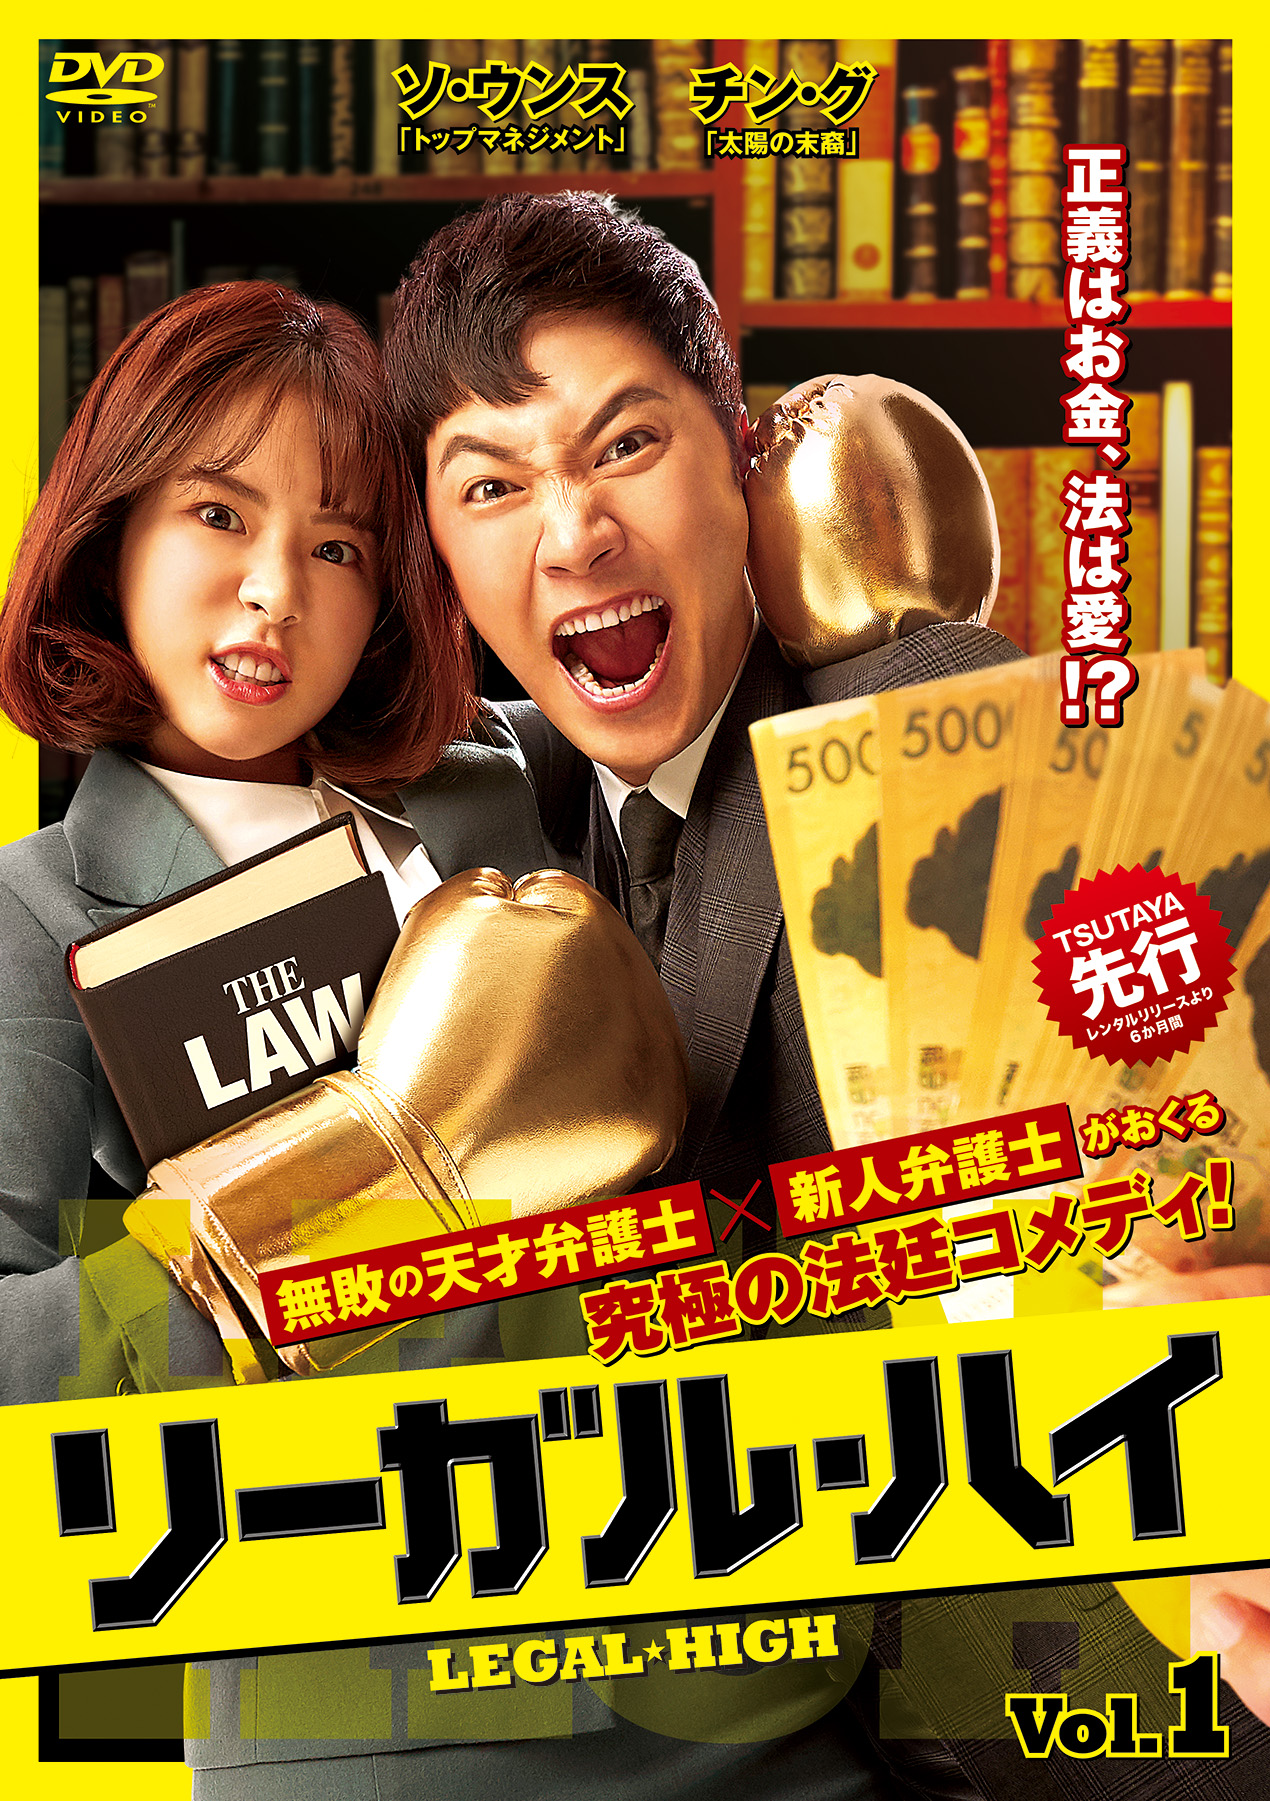 正義はお金 法は愛 無敗の天才弁護士 新人弁護士がおくる究極の法廷コメディ リーガル ハイ 21年1月6日 水 Tsutaya先行レンタル Dvd Box1発売決定 Asian Musse